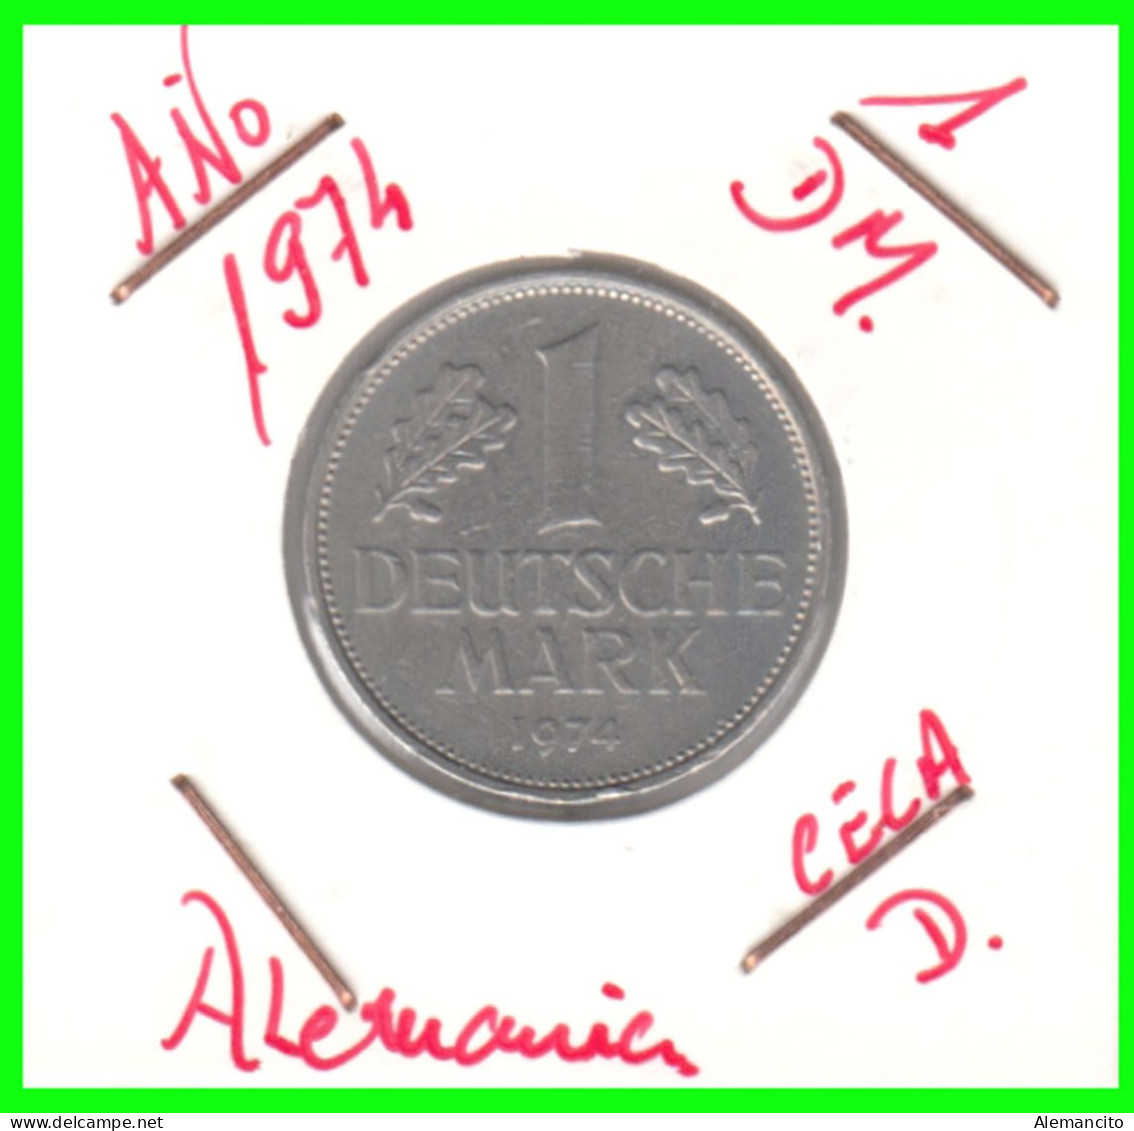 ALEMANIA FEDERAL - DEUTSCHLAND - GERMANY –  MONEDA DE LA REPUBLICA FEDERAL DE ALEMANIA DE 1.00 DM-DEL AÑO 1974 - CECA-D - 1 Marco